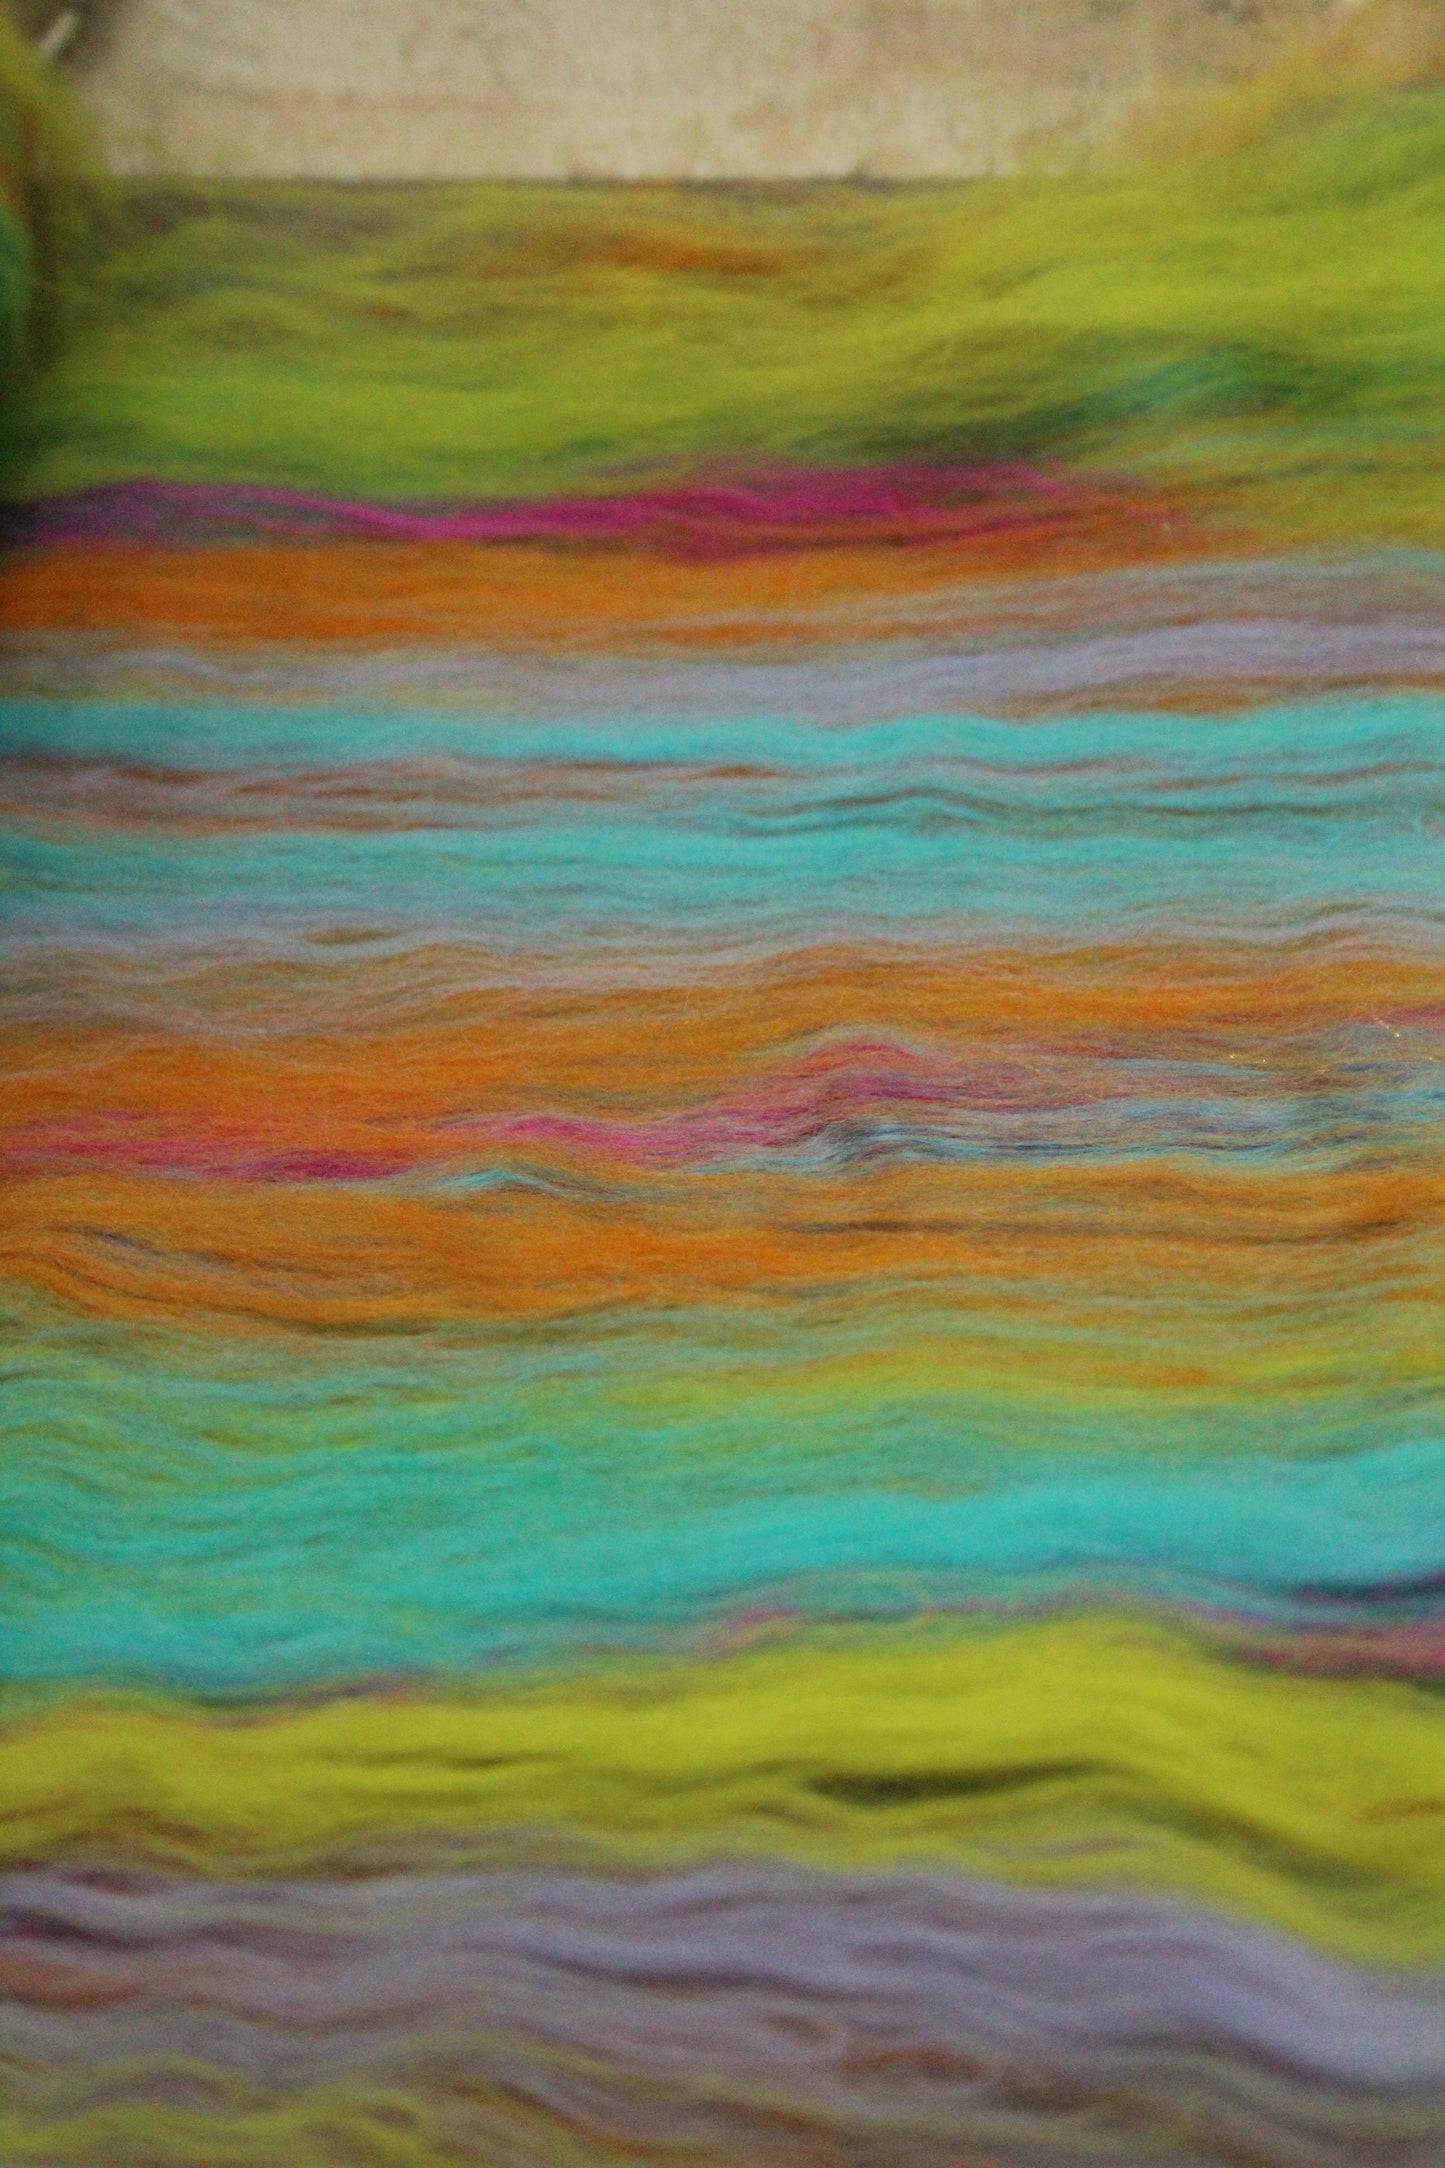 Merino Art Batt  - Blue Green Purple  - 104 grams 3.6 oz - Wool for felting, spinning and weaving